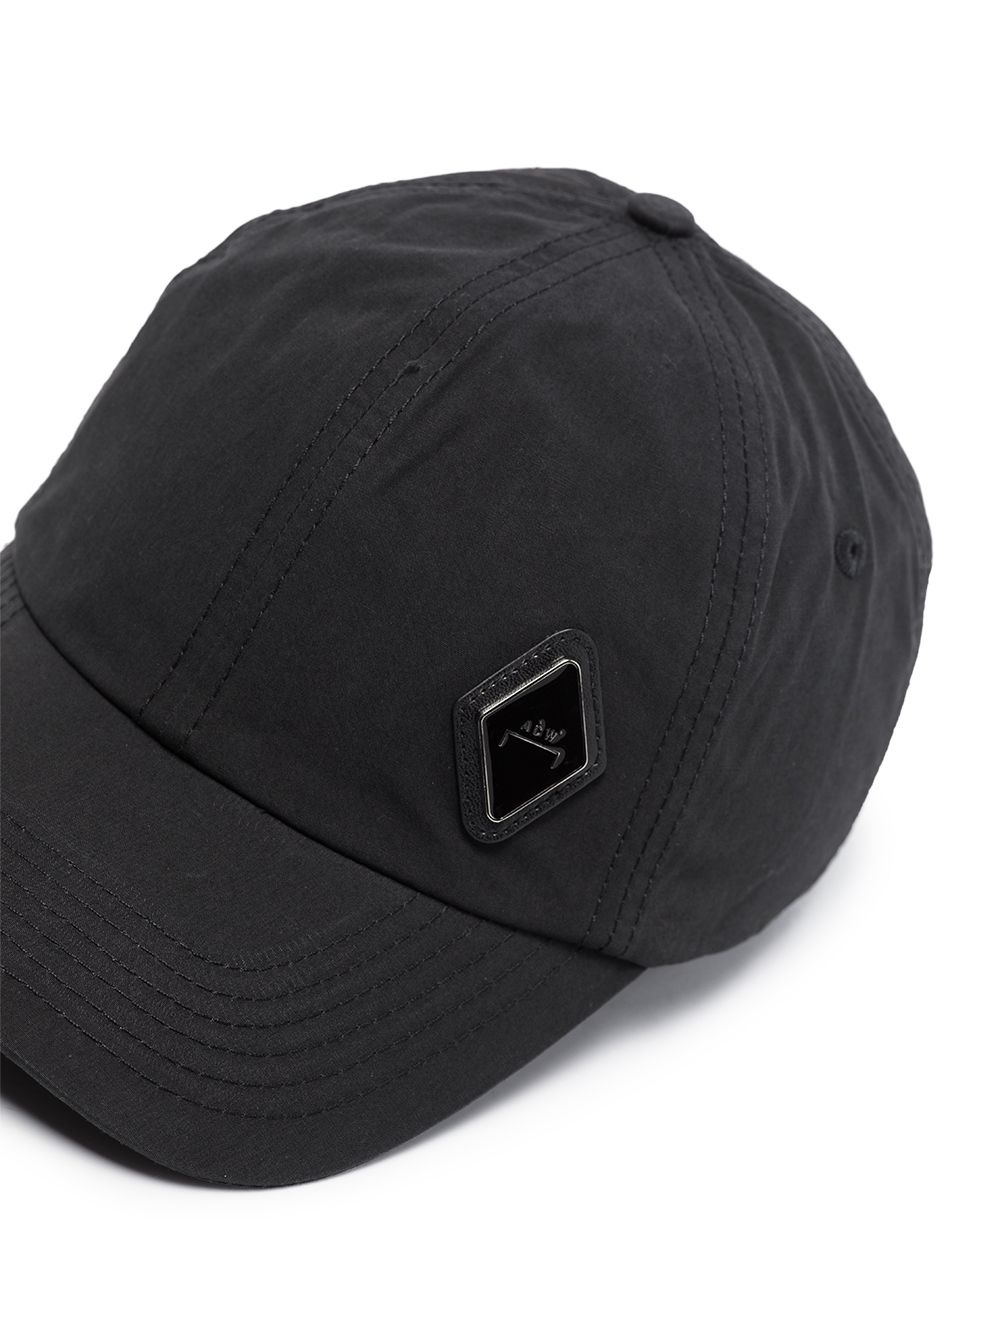 Diamond patch baseball cap - 5